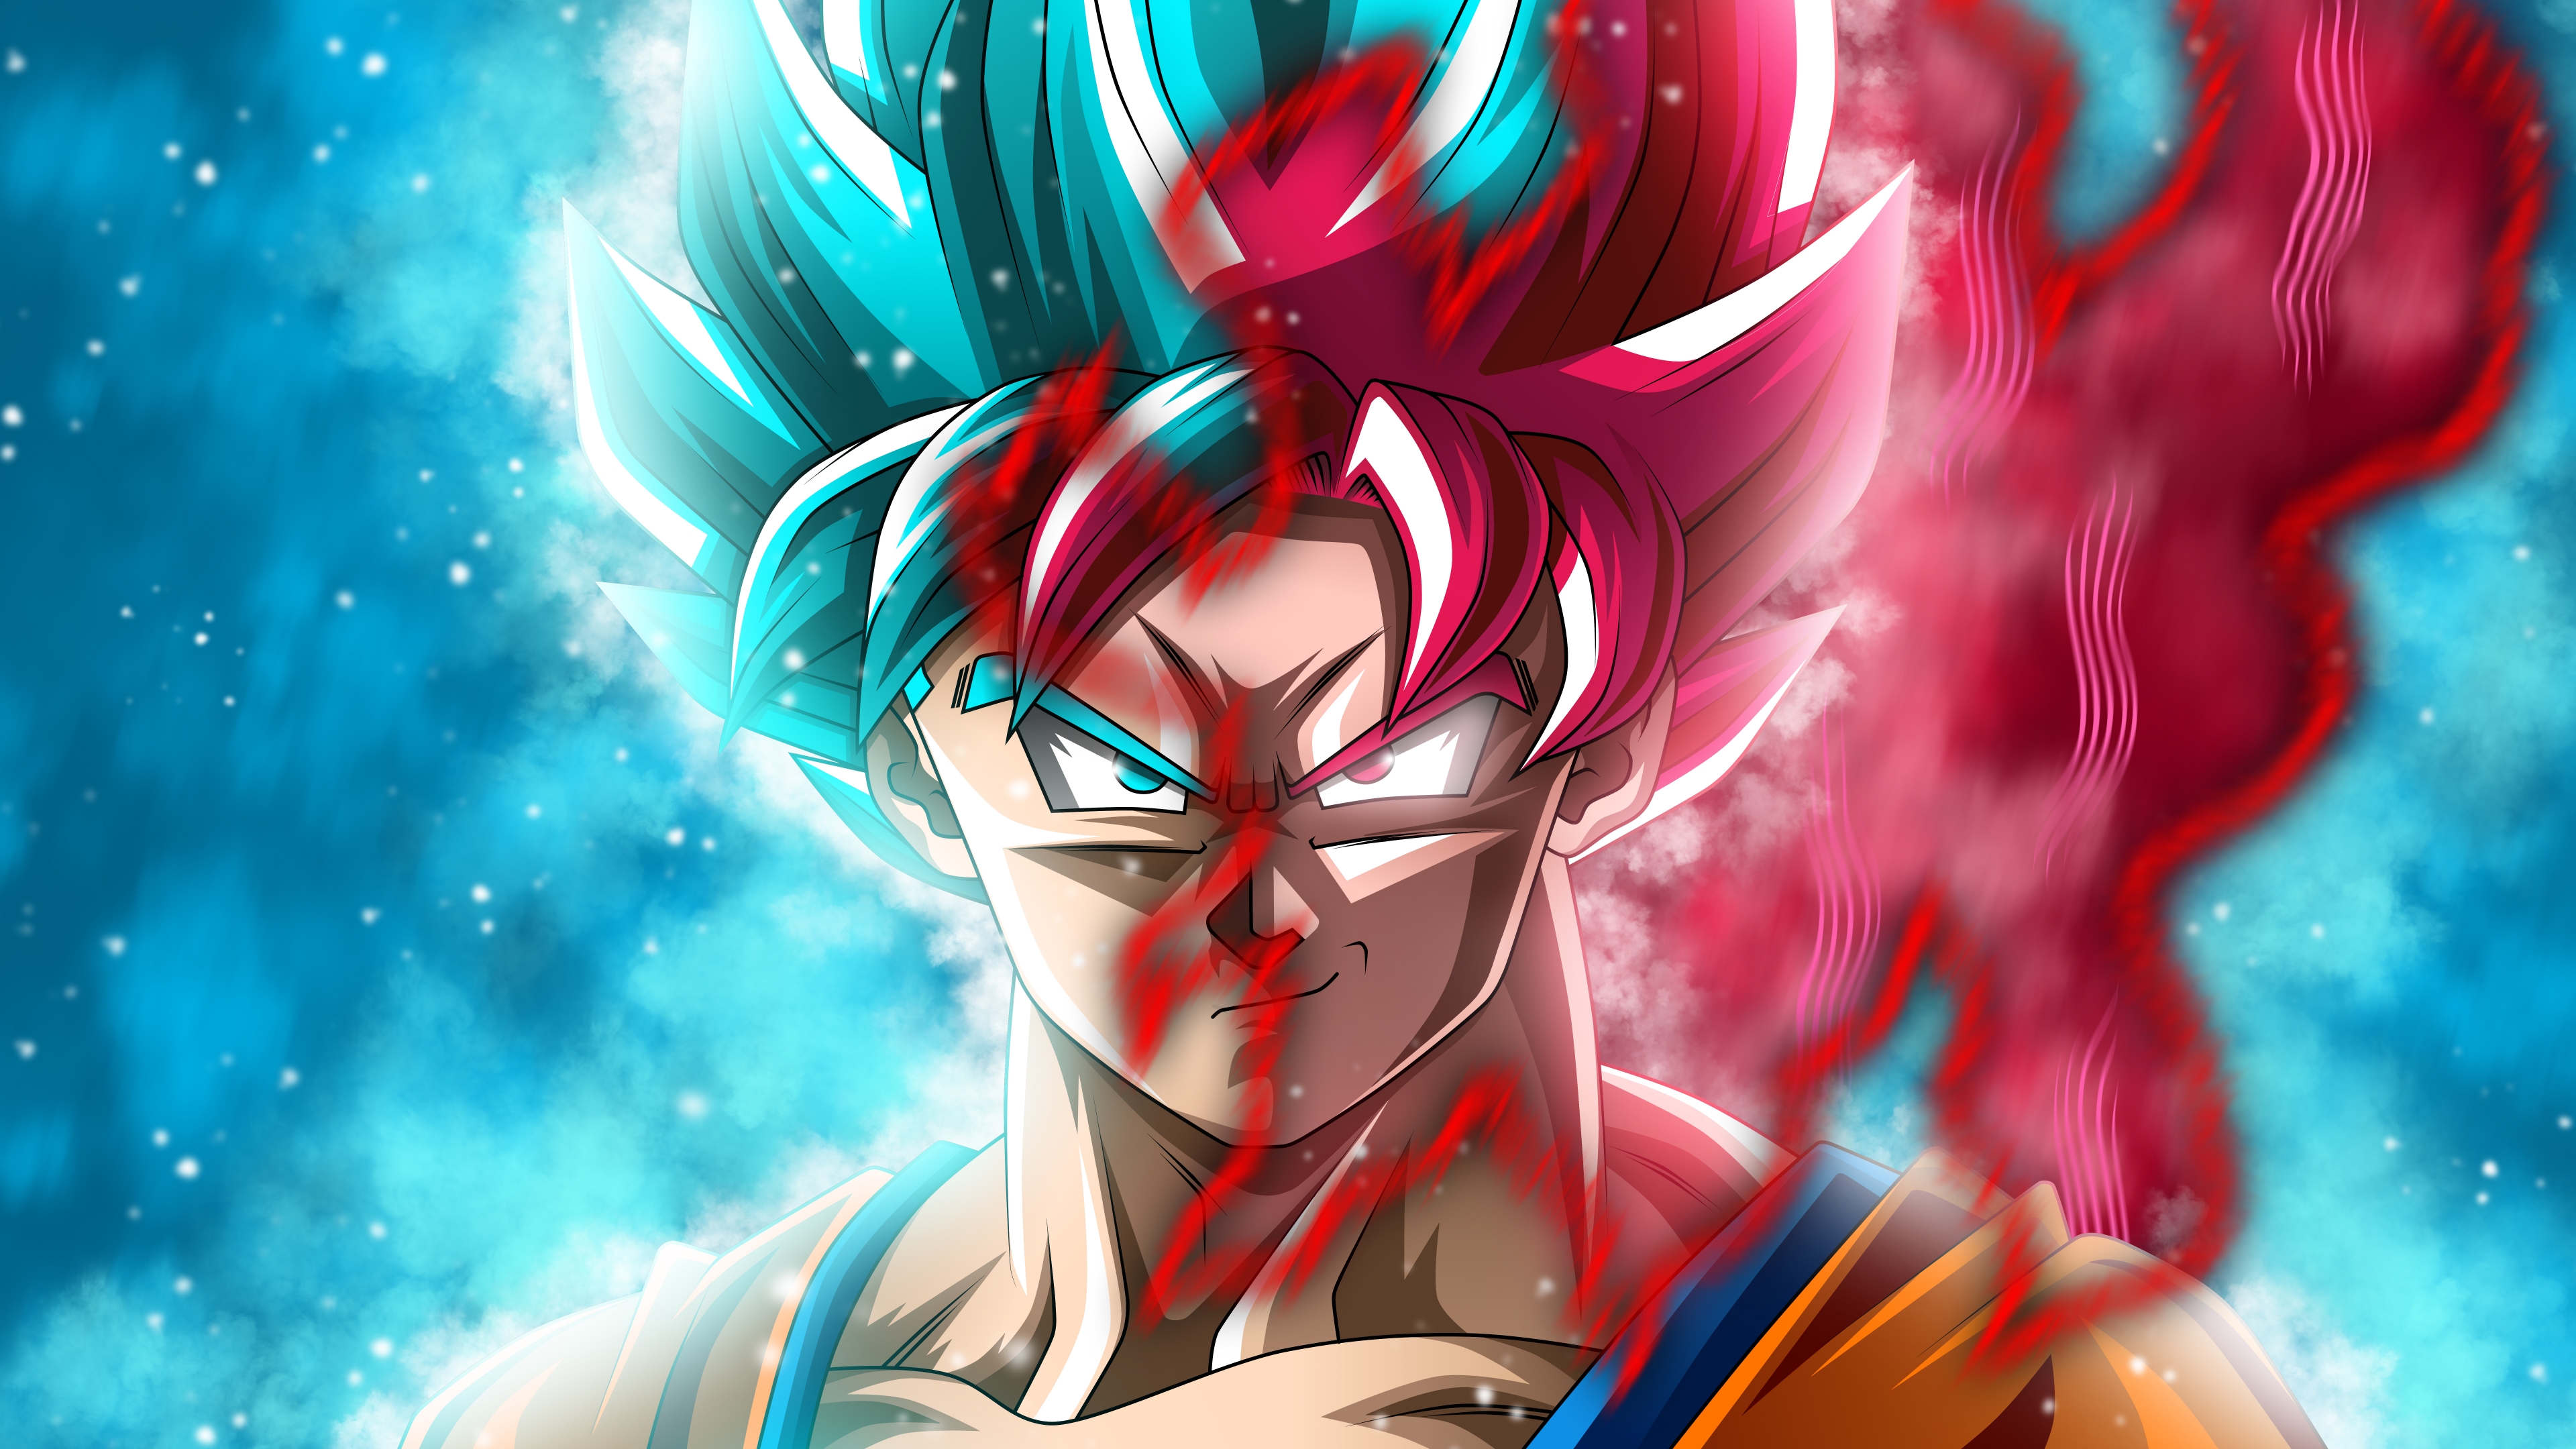 Goku Super Saiyan Blue and Black Goku SSR Dragon Ball Super Anime Wallpaper  ID:3097